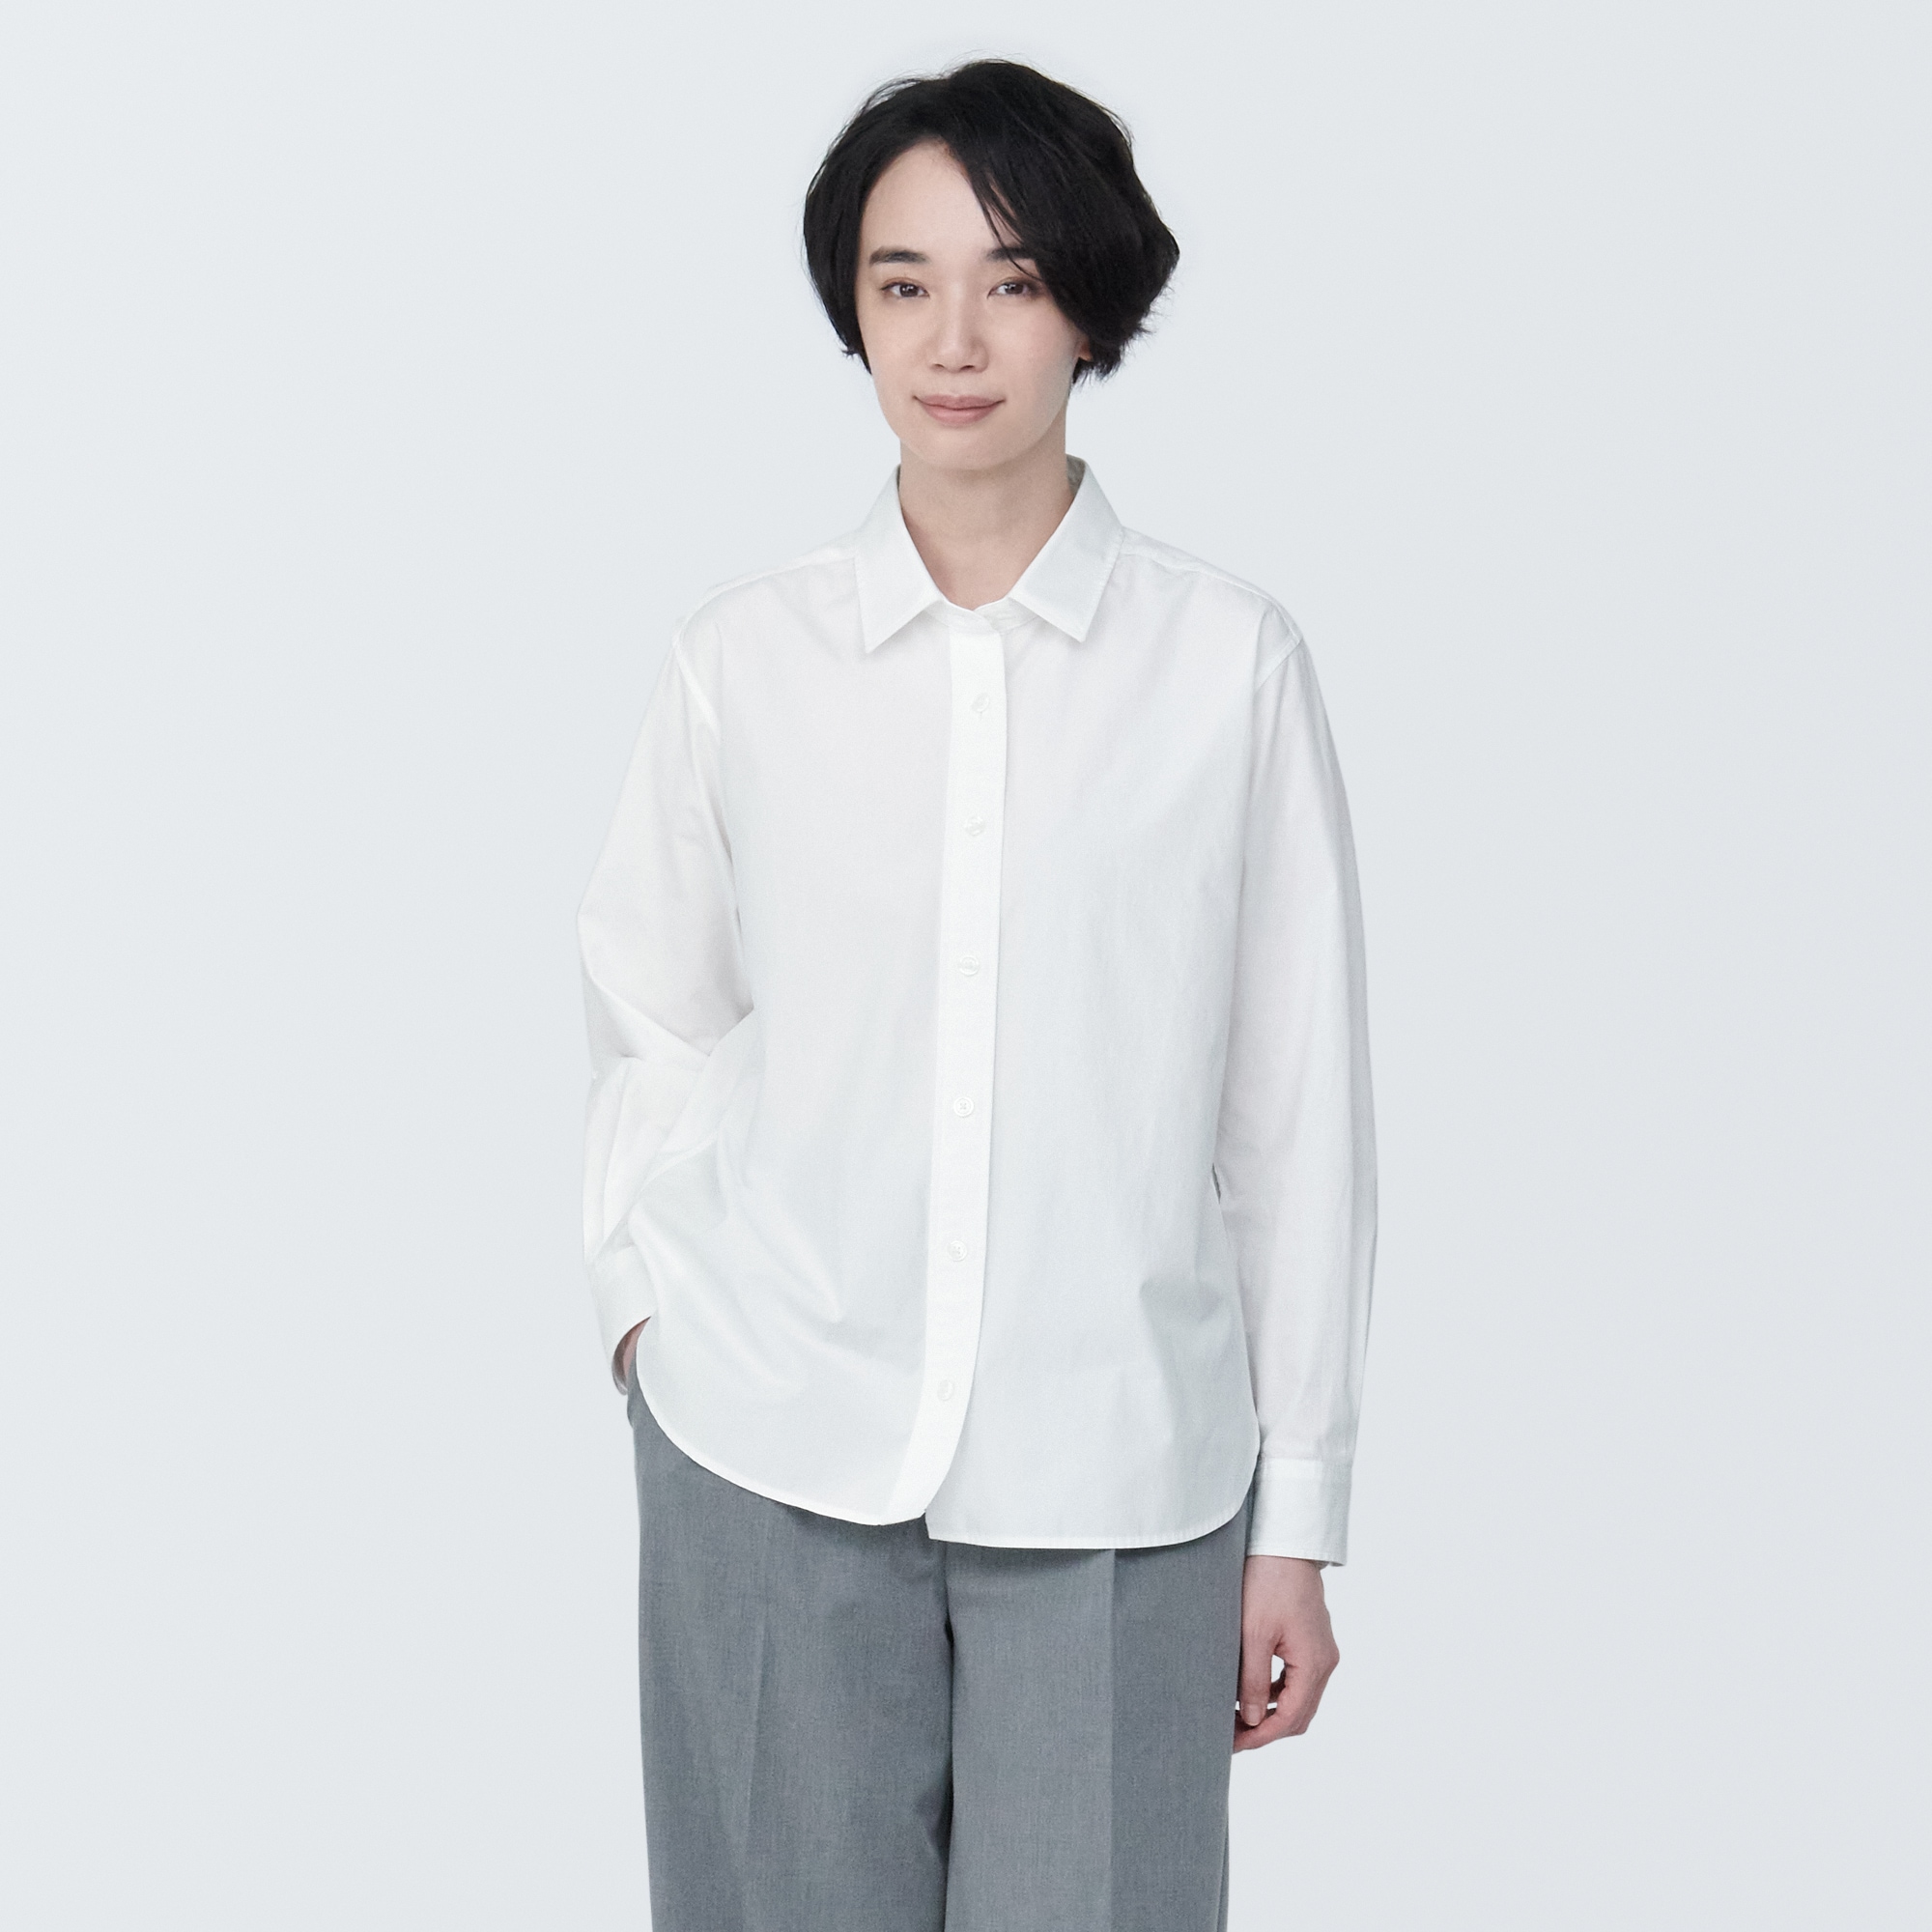 무인양품 일본 여성 워시트아웃 브로드 레귤러 컬러 긴소매 셔츠